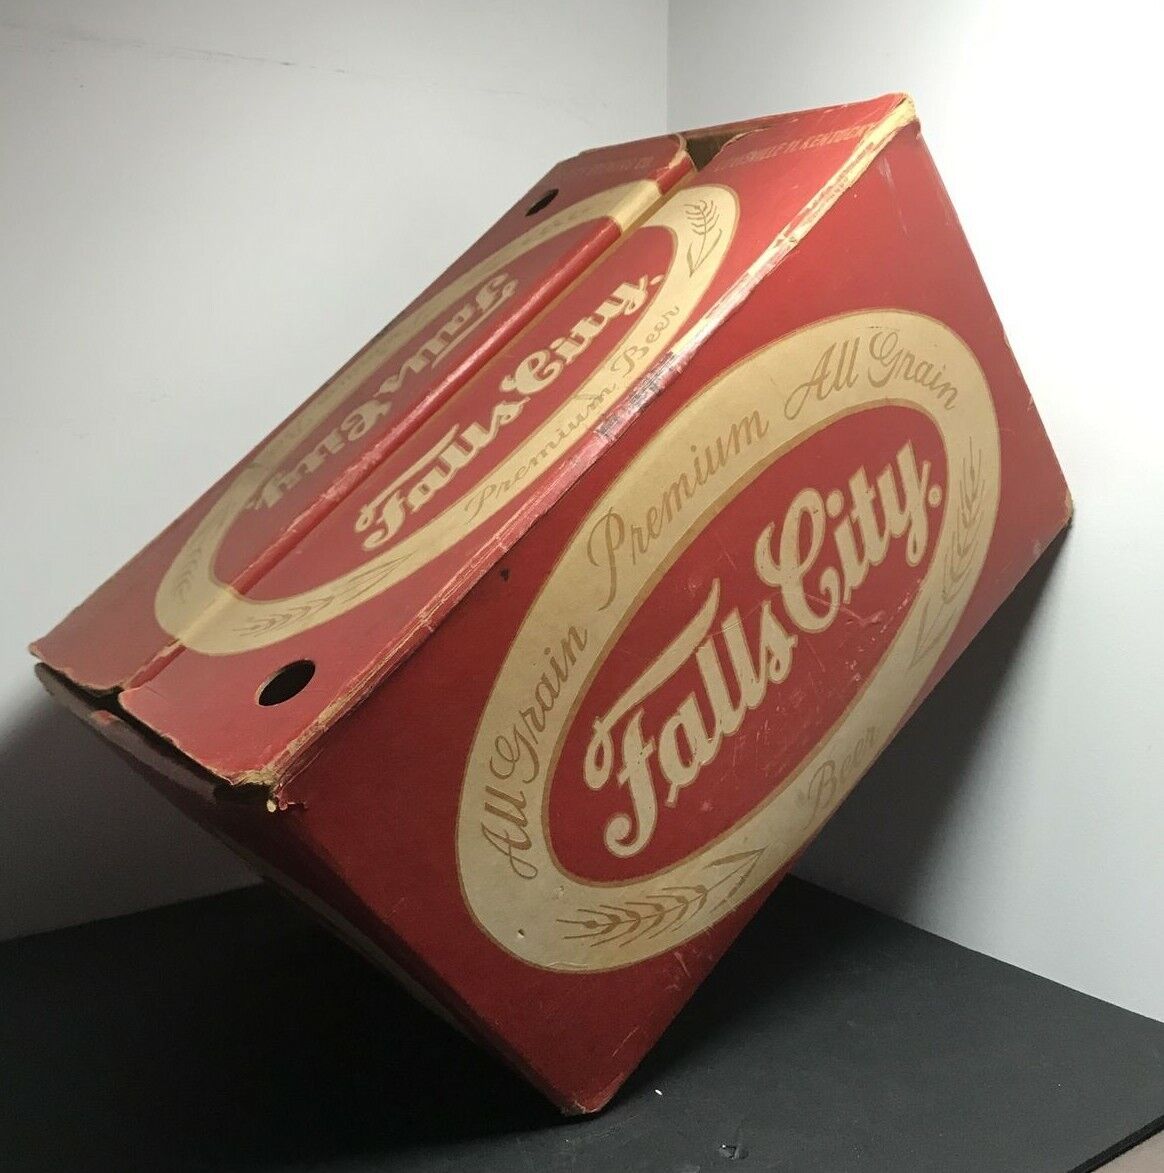 1950's Falls City Beer Cardboard Beer Bottle Case All Grain Premium Beer GC